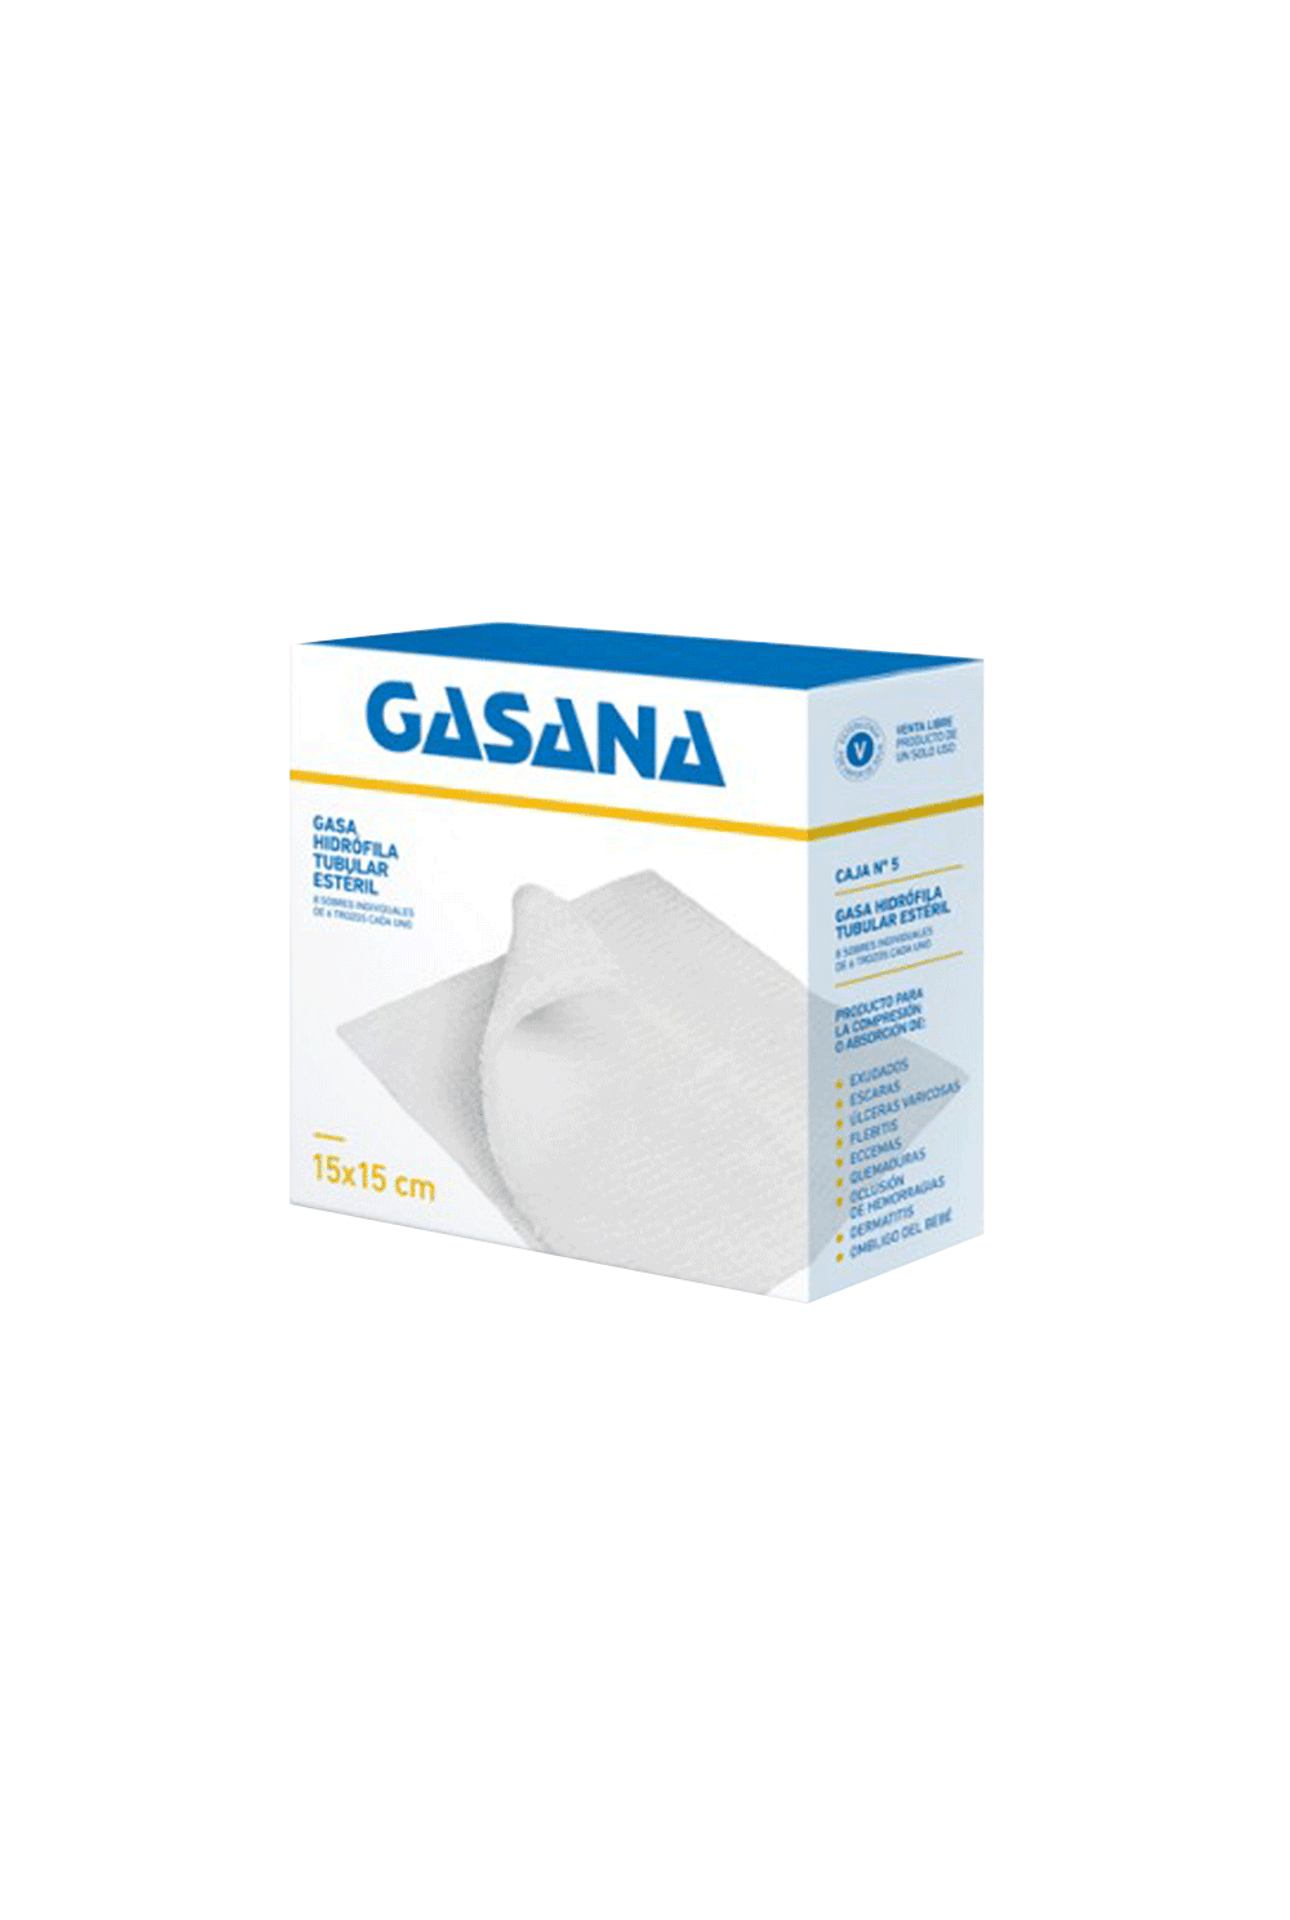 Gasa-Hidrogasa-Hidrofilica-Esteril-N°5-30X30-6-Pack-x-2-Unid-Hidrogasa